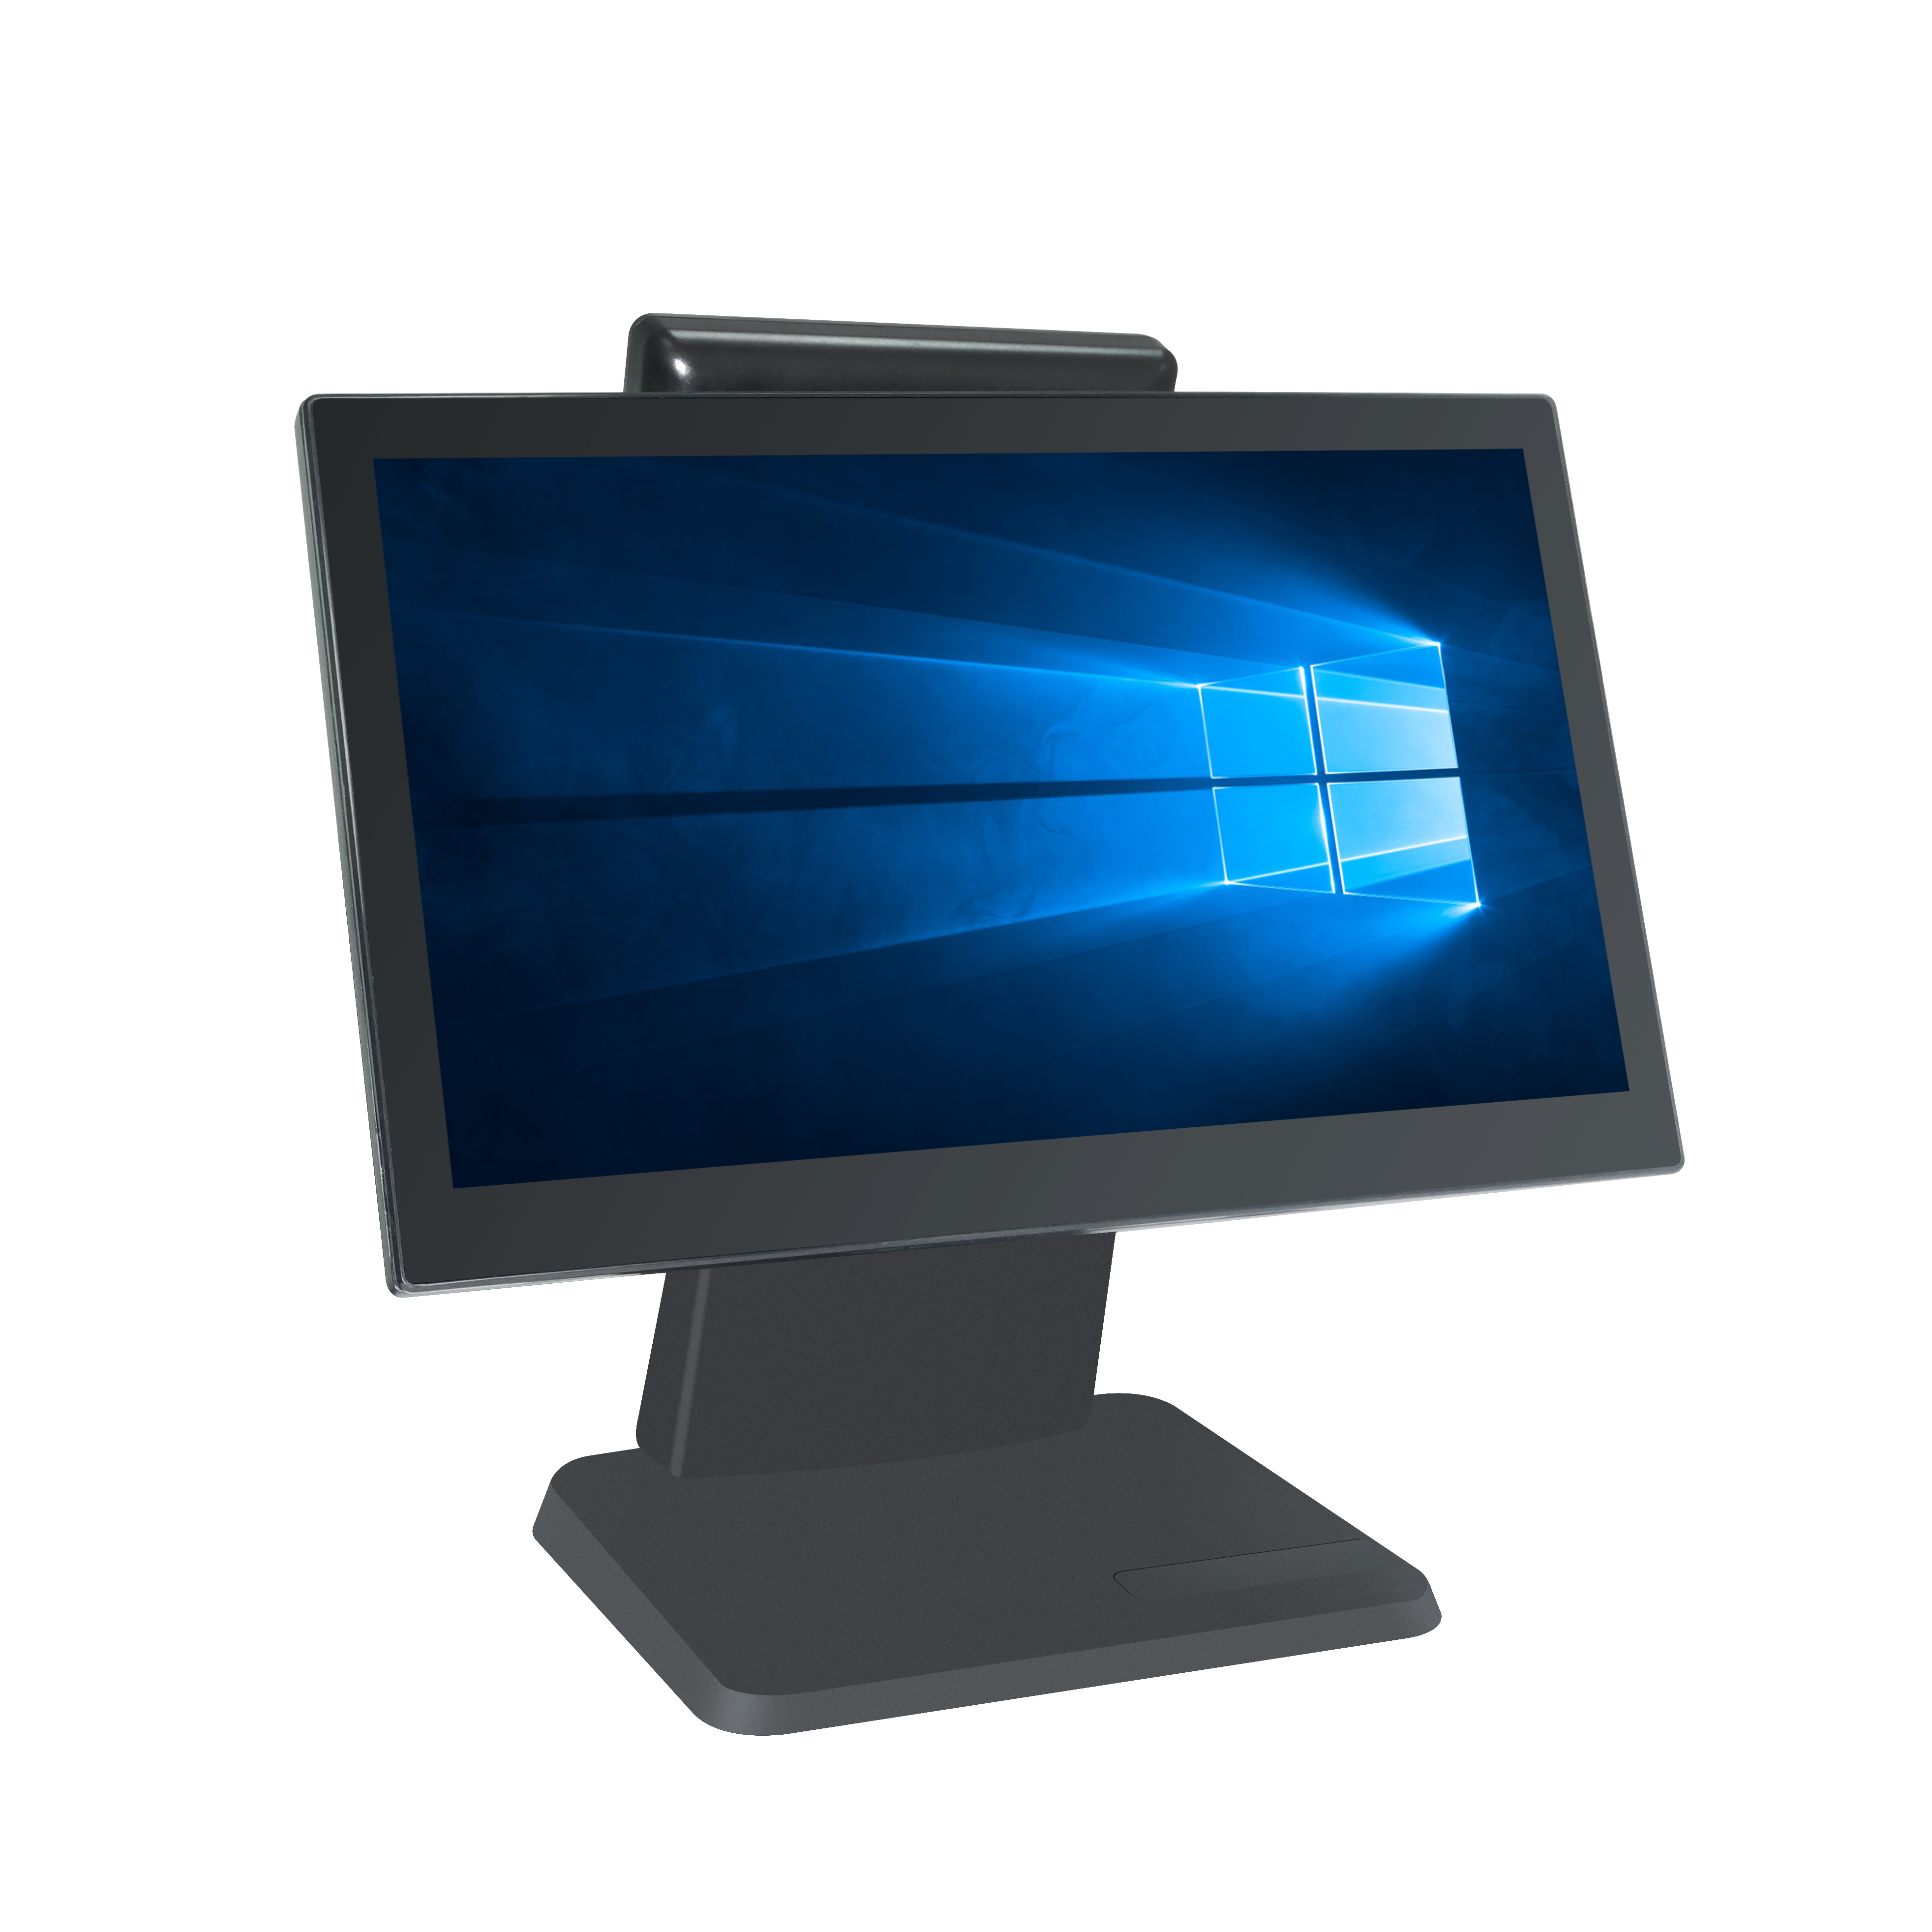 (POS-1516) BOE gloednieuwe 15.6 inch gloednieuwe dual touch screen windows j1900 desktop smart pos terminals